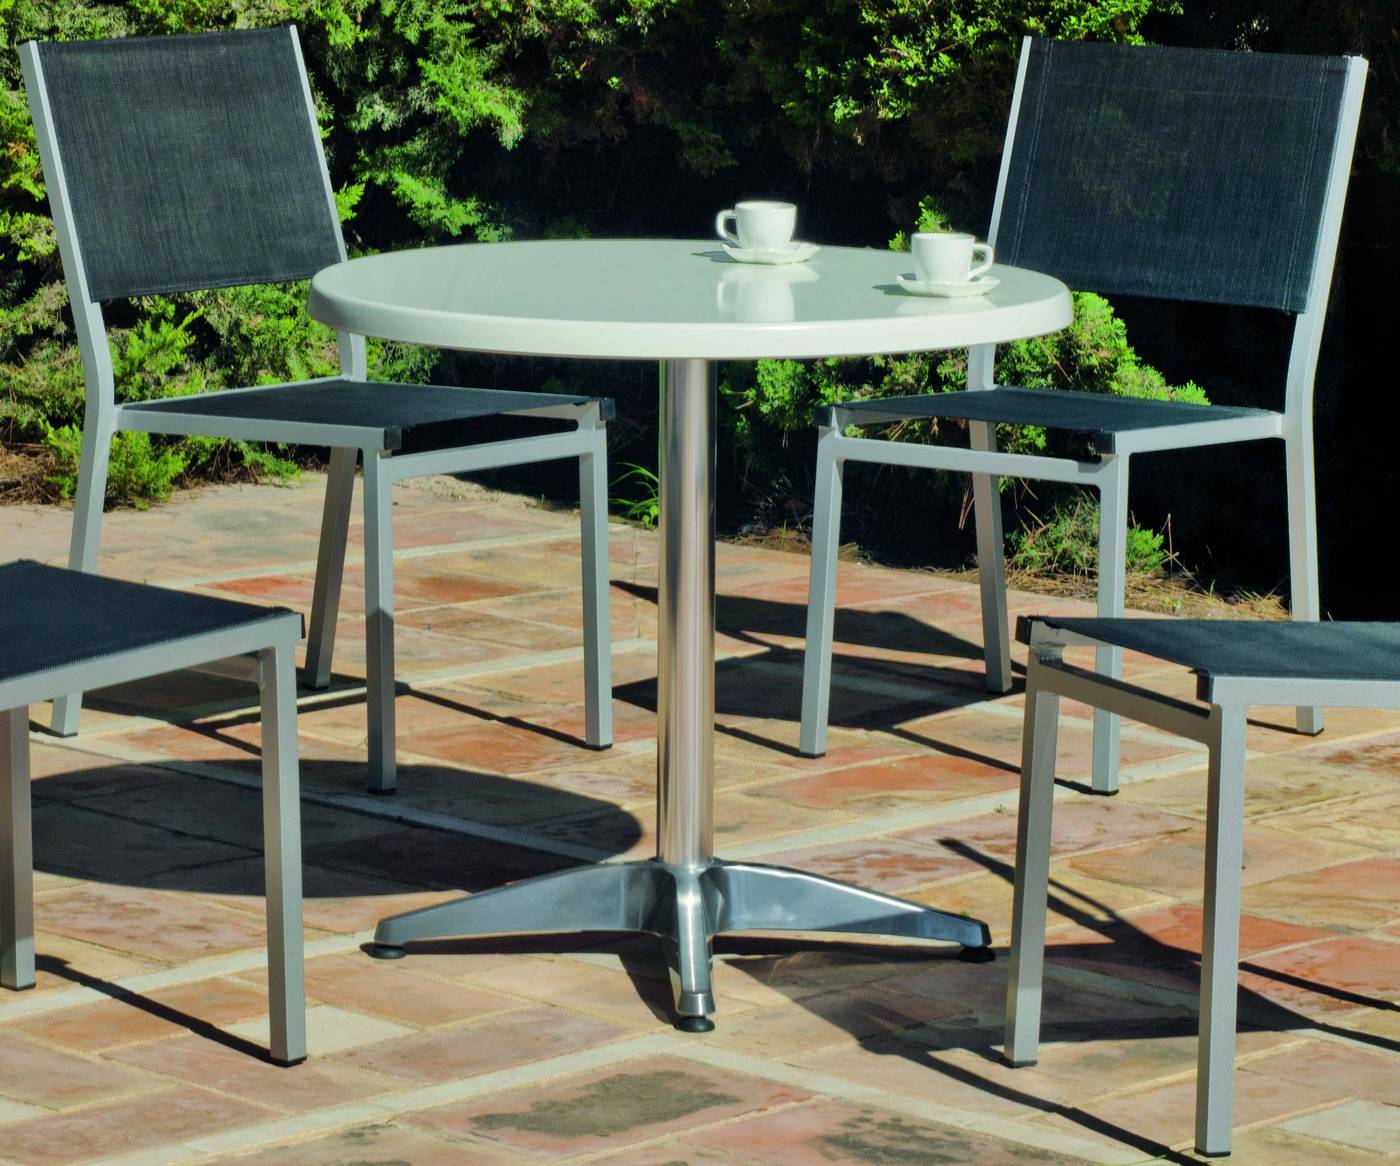 Set Aluminio Luna/Sion-80/4 - Conjunto aluminio: mesa redonda de aluminio, con tablero de Hevegalite  de 80 cm. y 4 sillas de aluminio color plata y textilen color gris